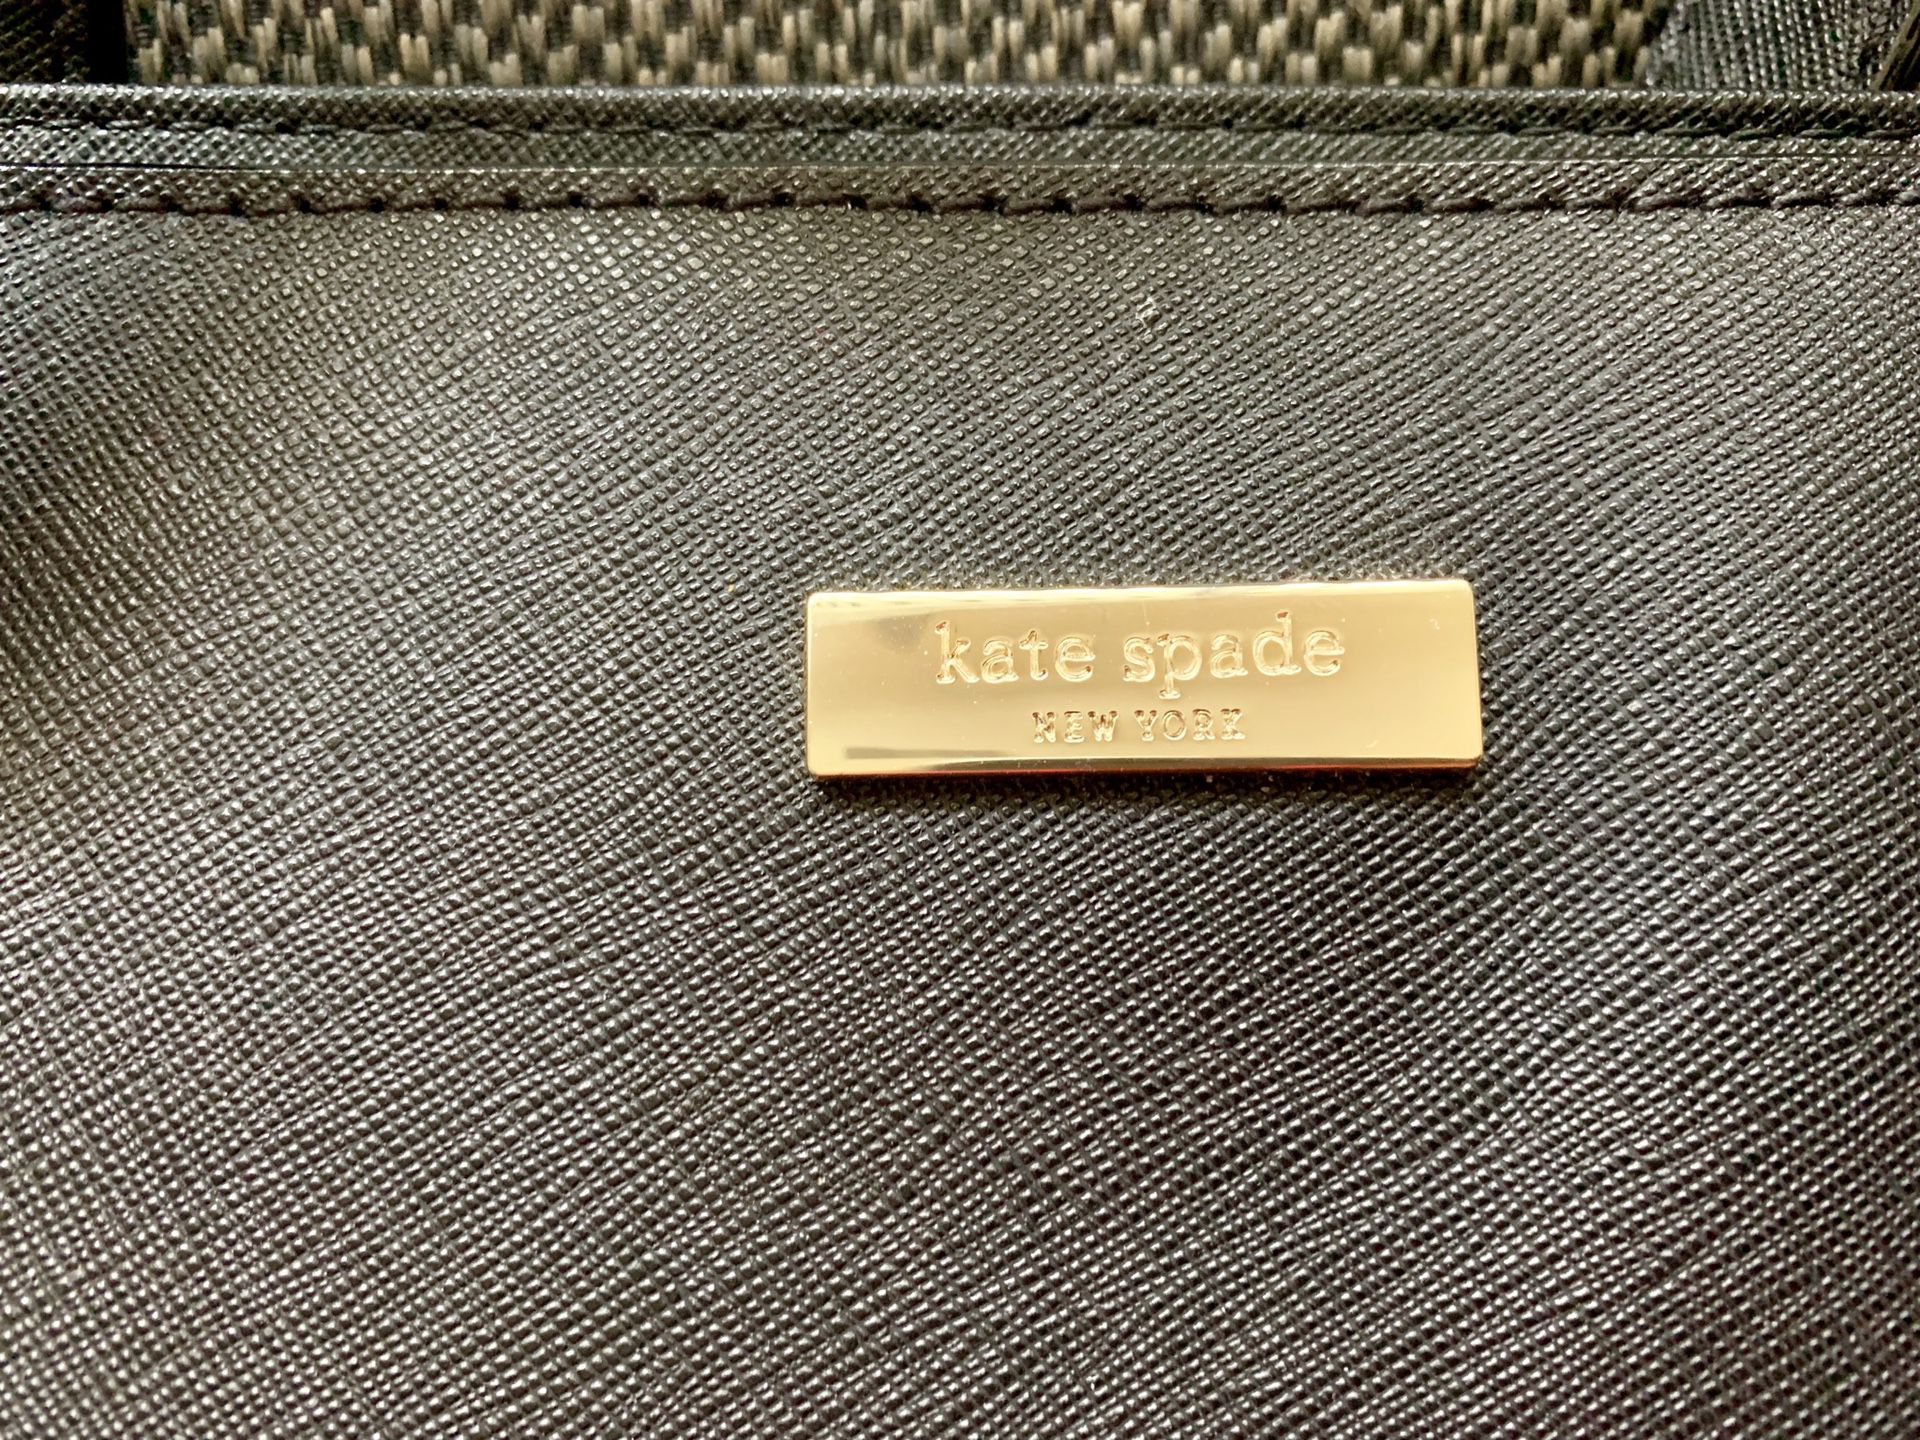 Kate Spade Large Tote